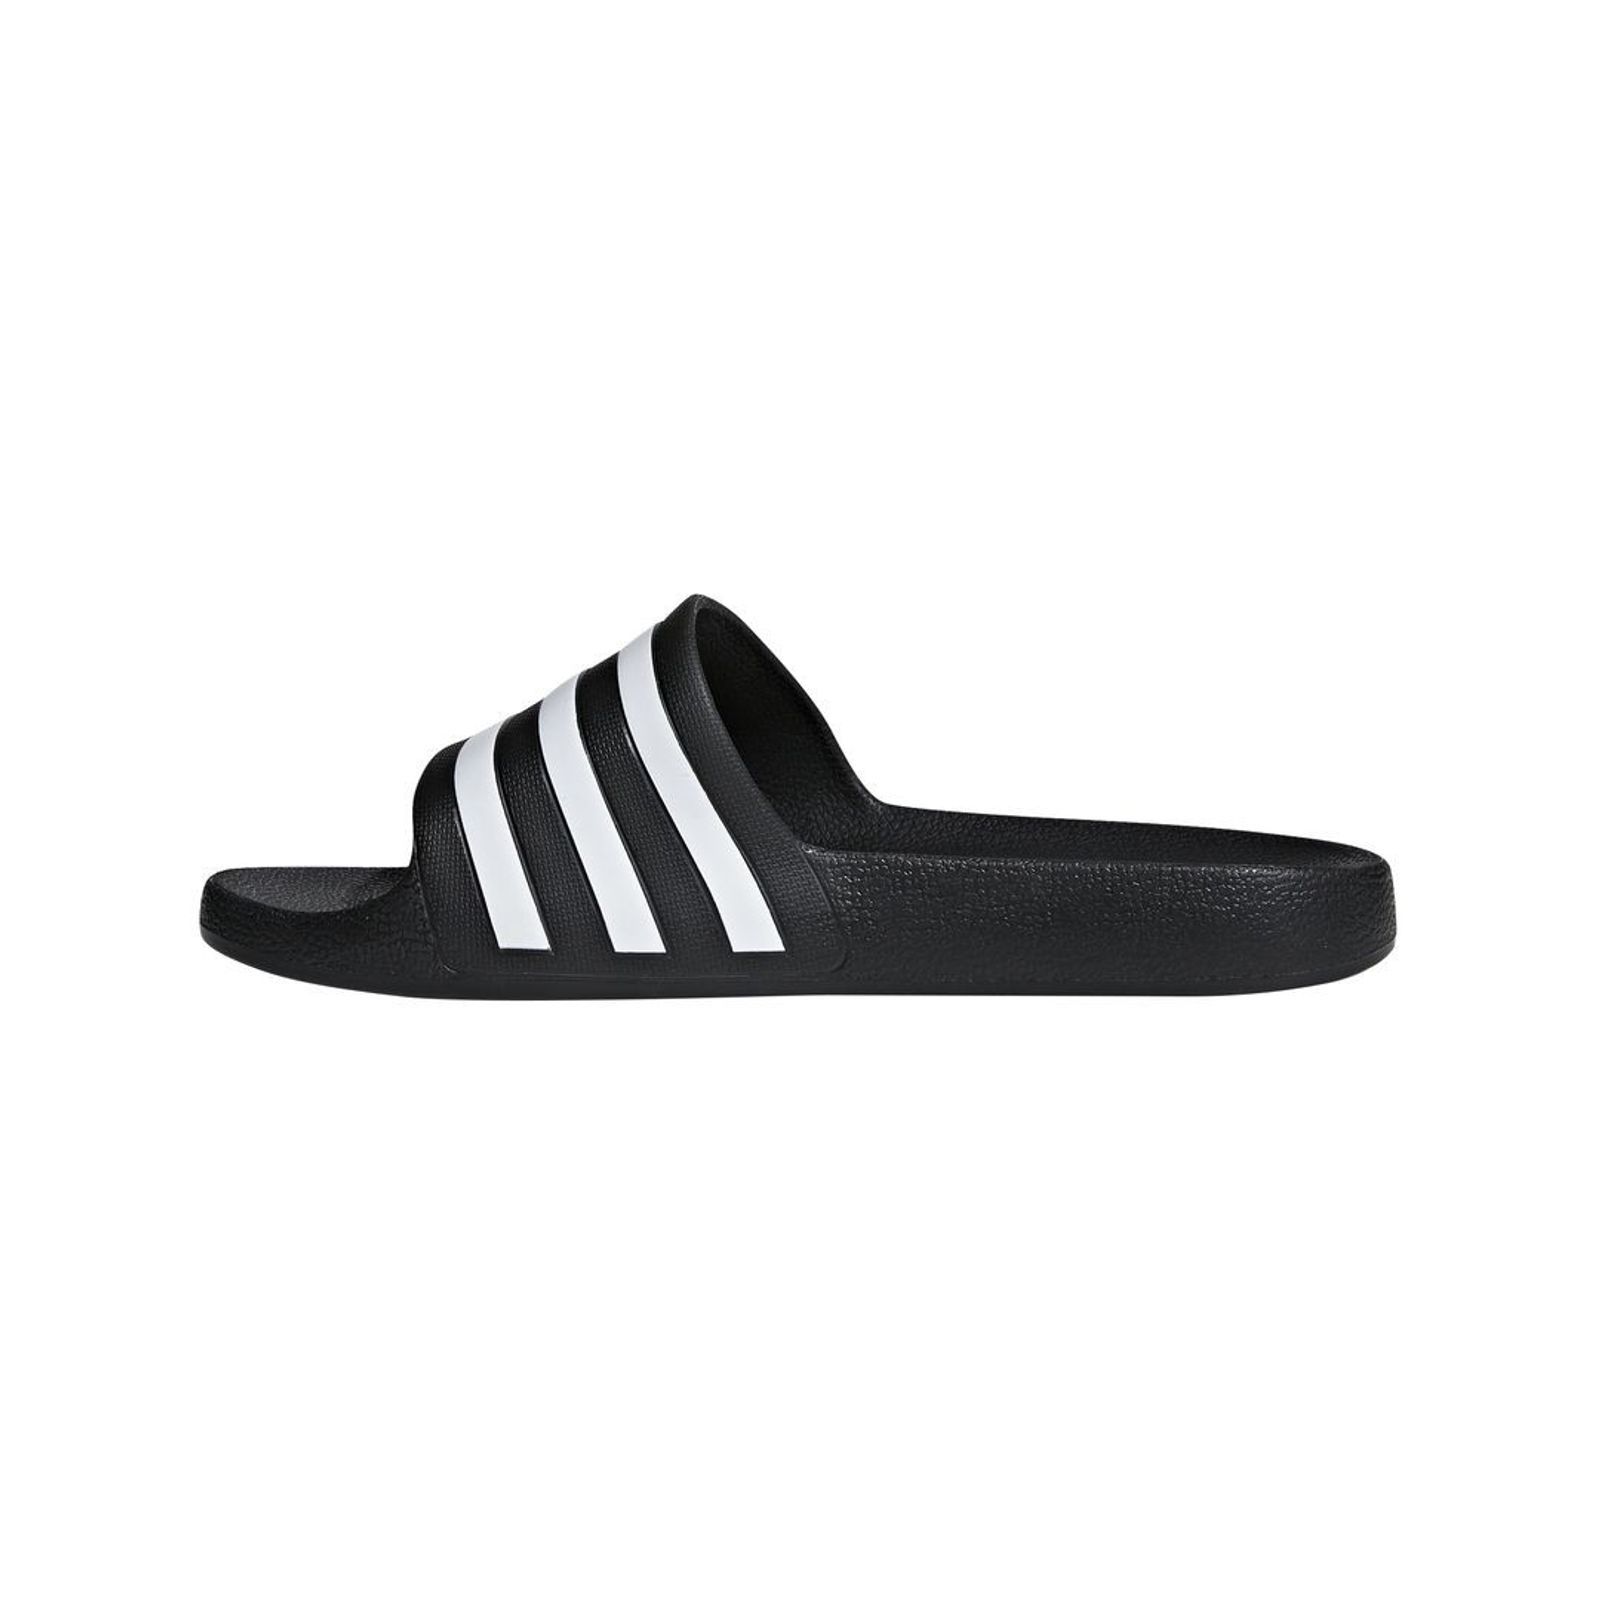 Schuh von Adidas, 13